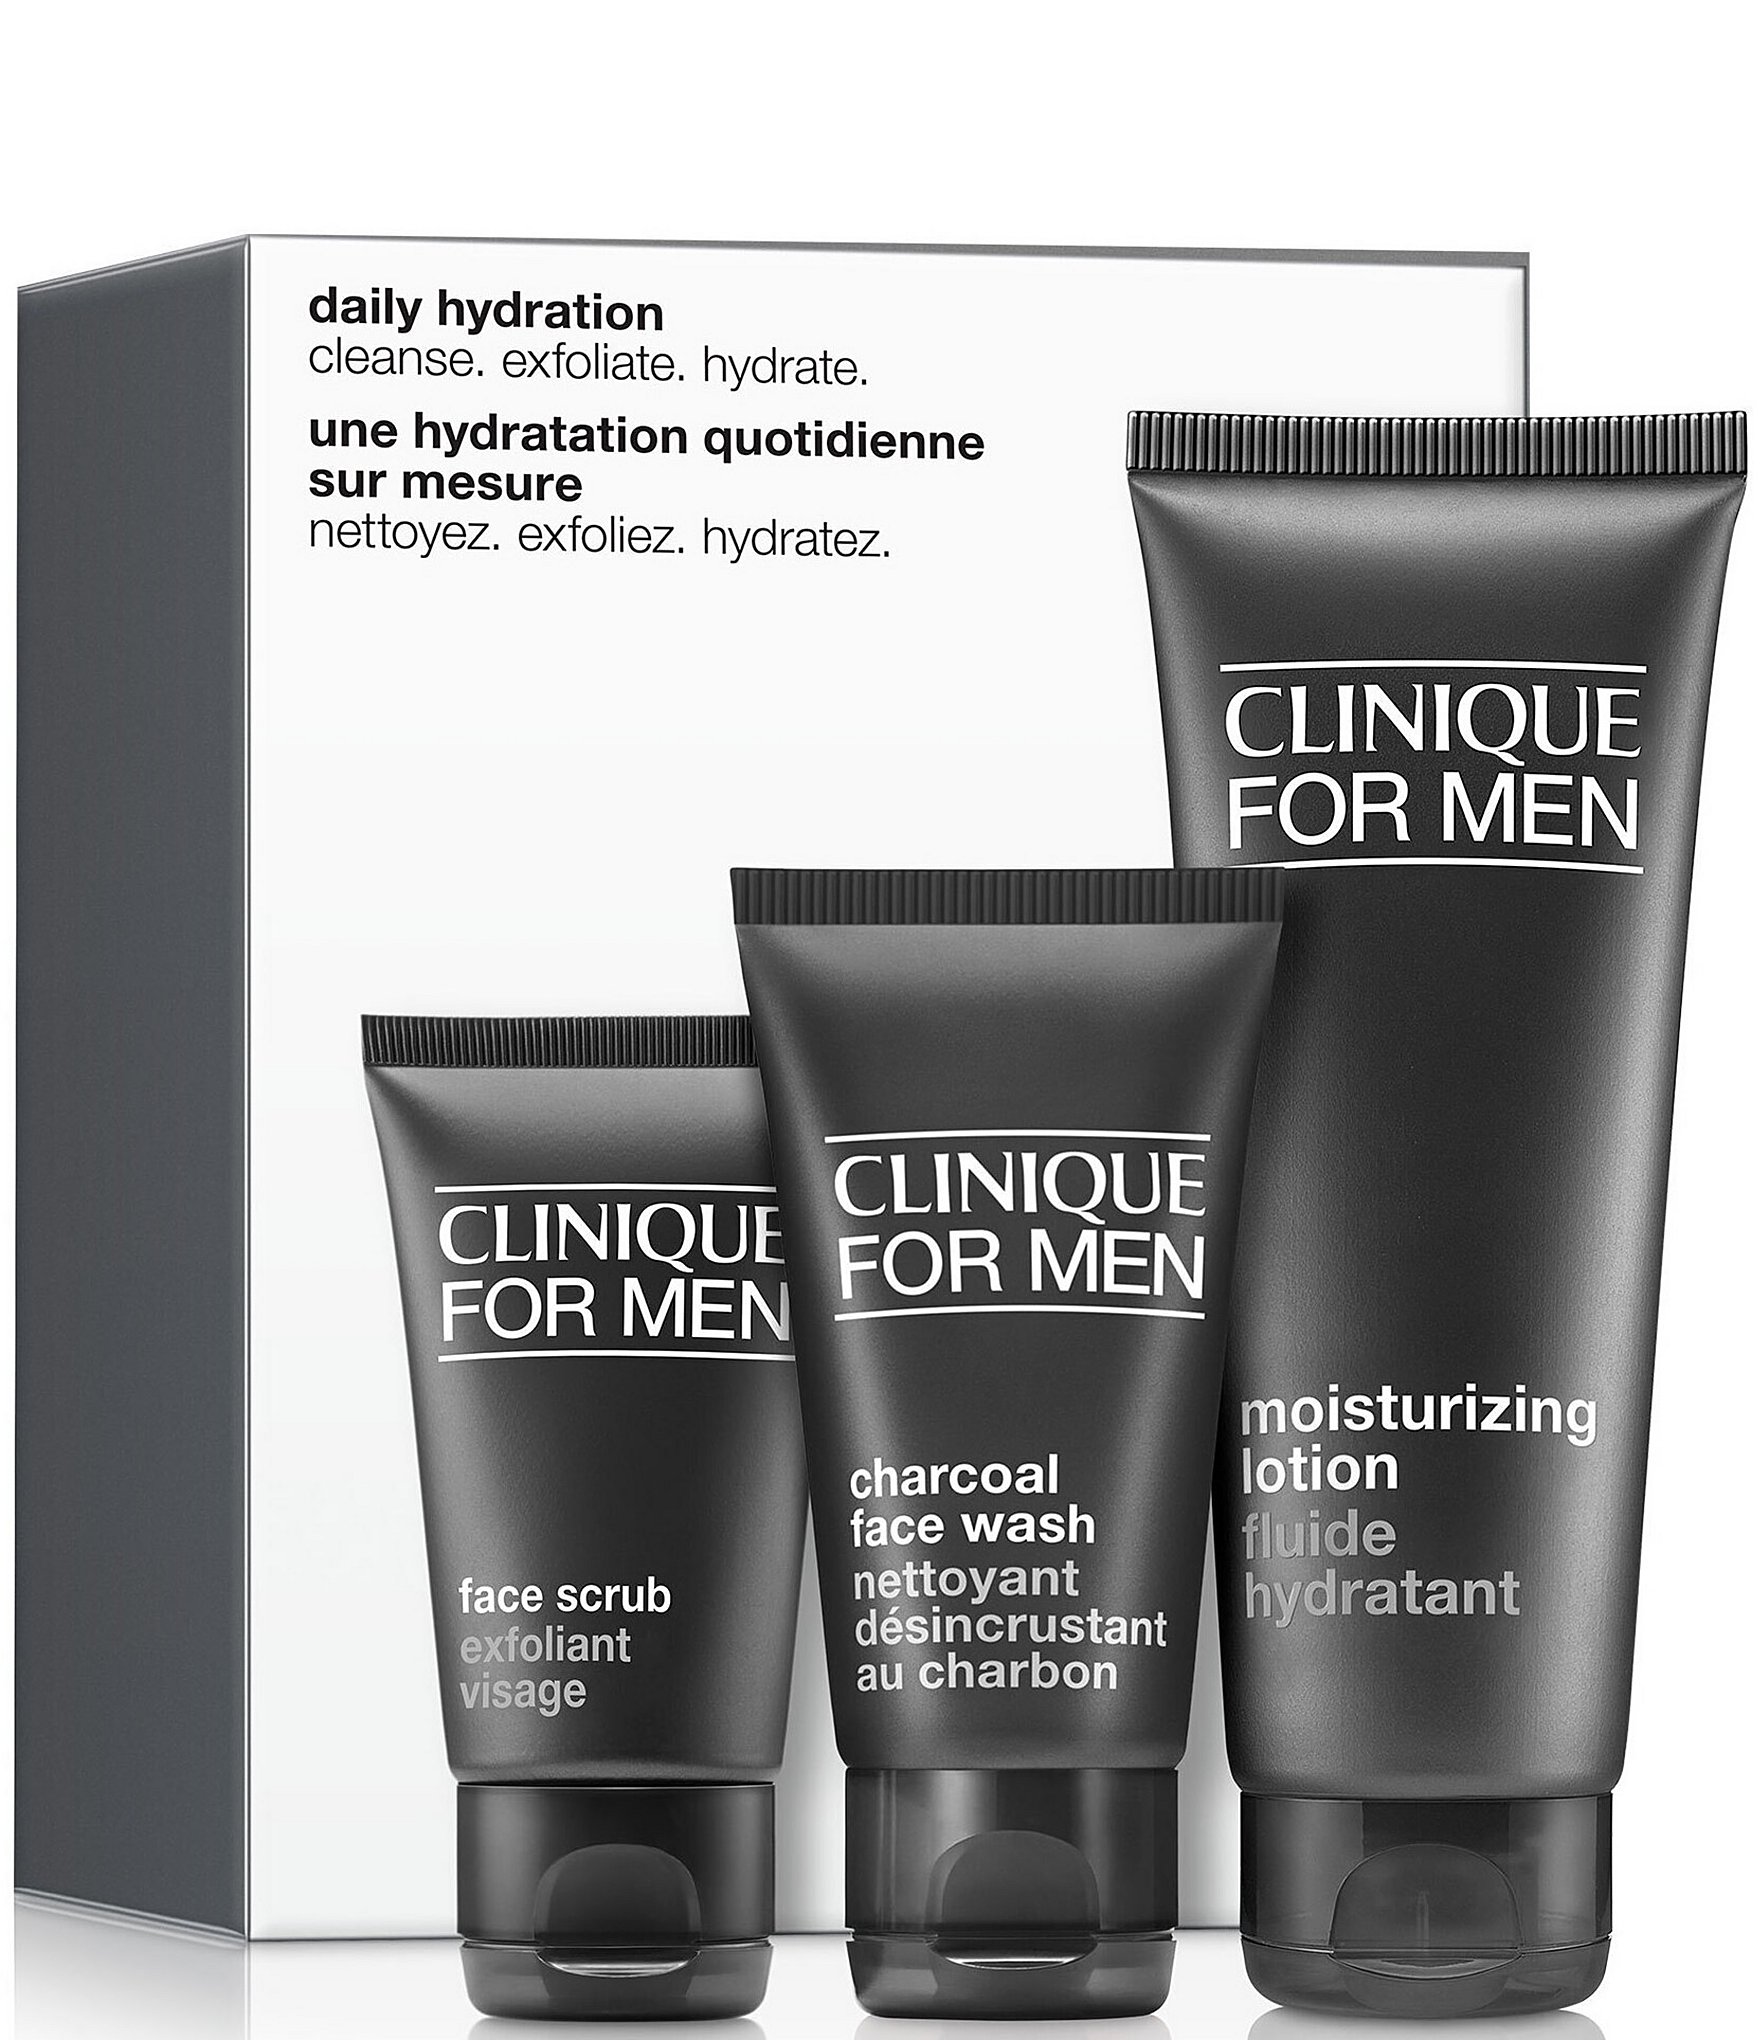 Trafik Generelt sagt Stolt Clinique Daily Hydration Skincare Set for Men | Dillard's